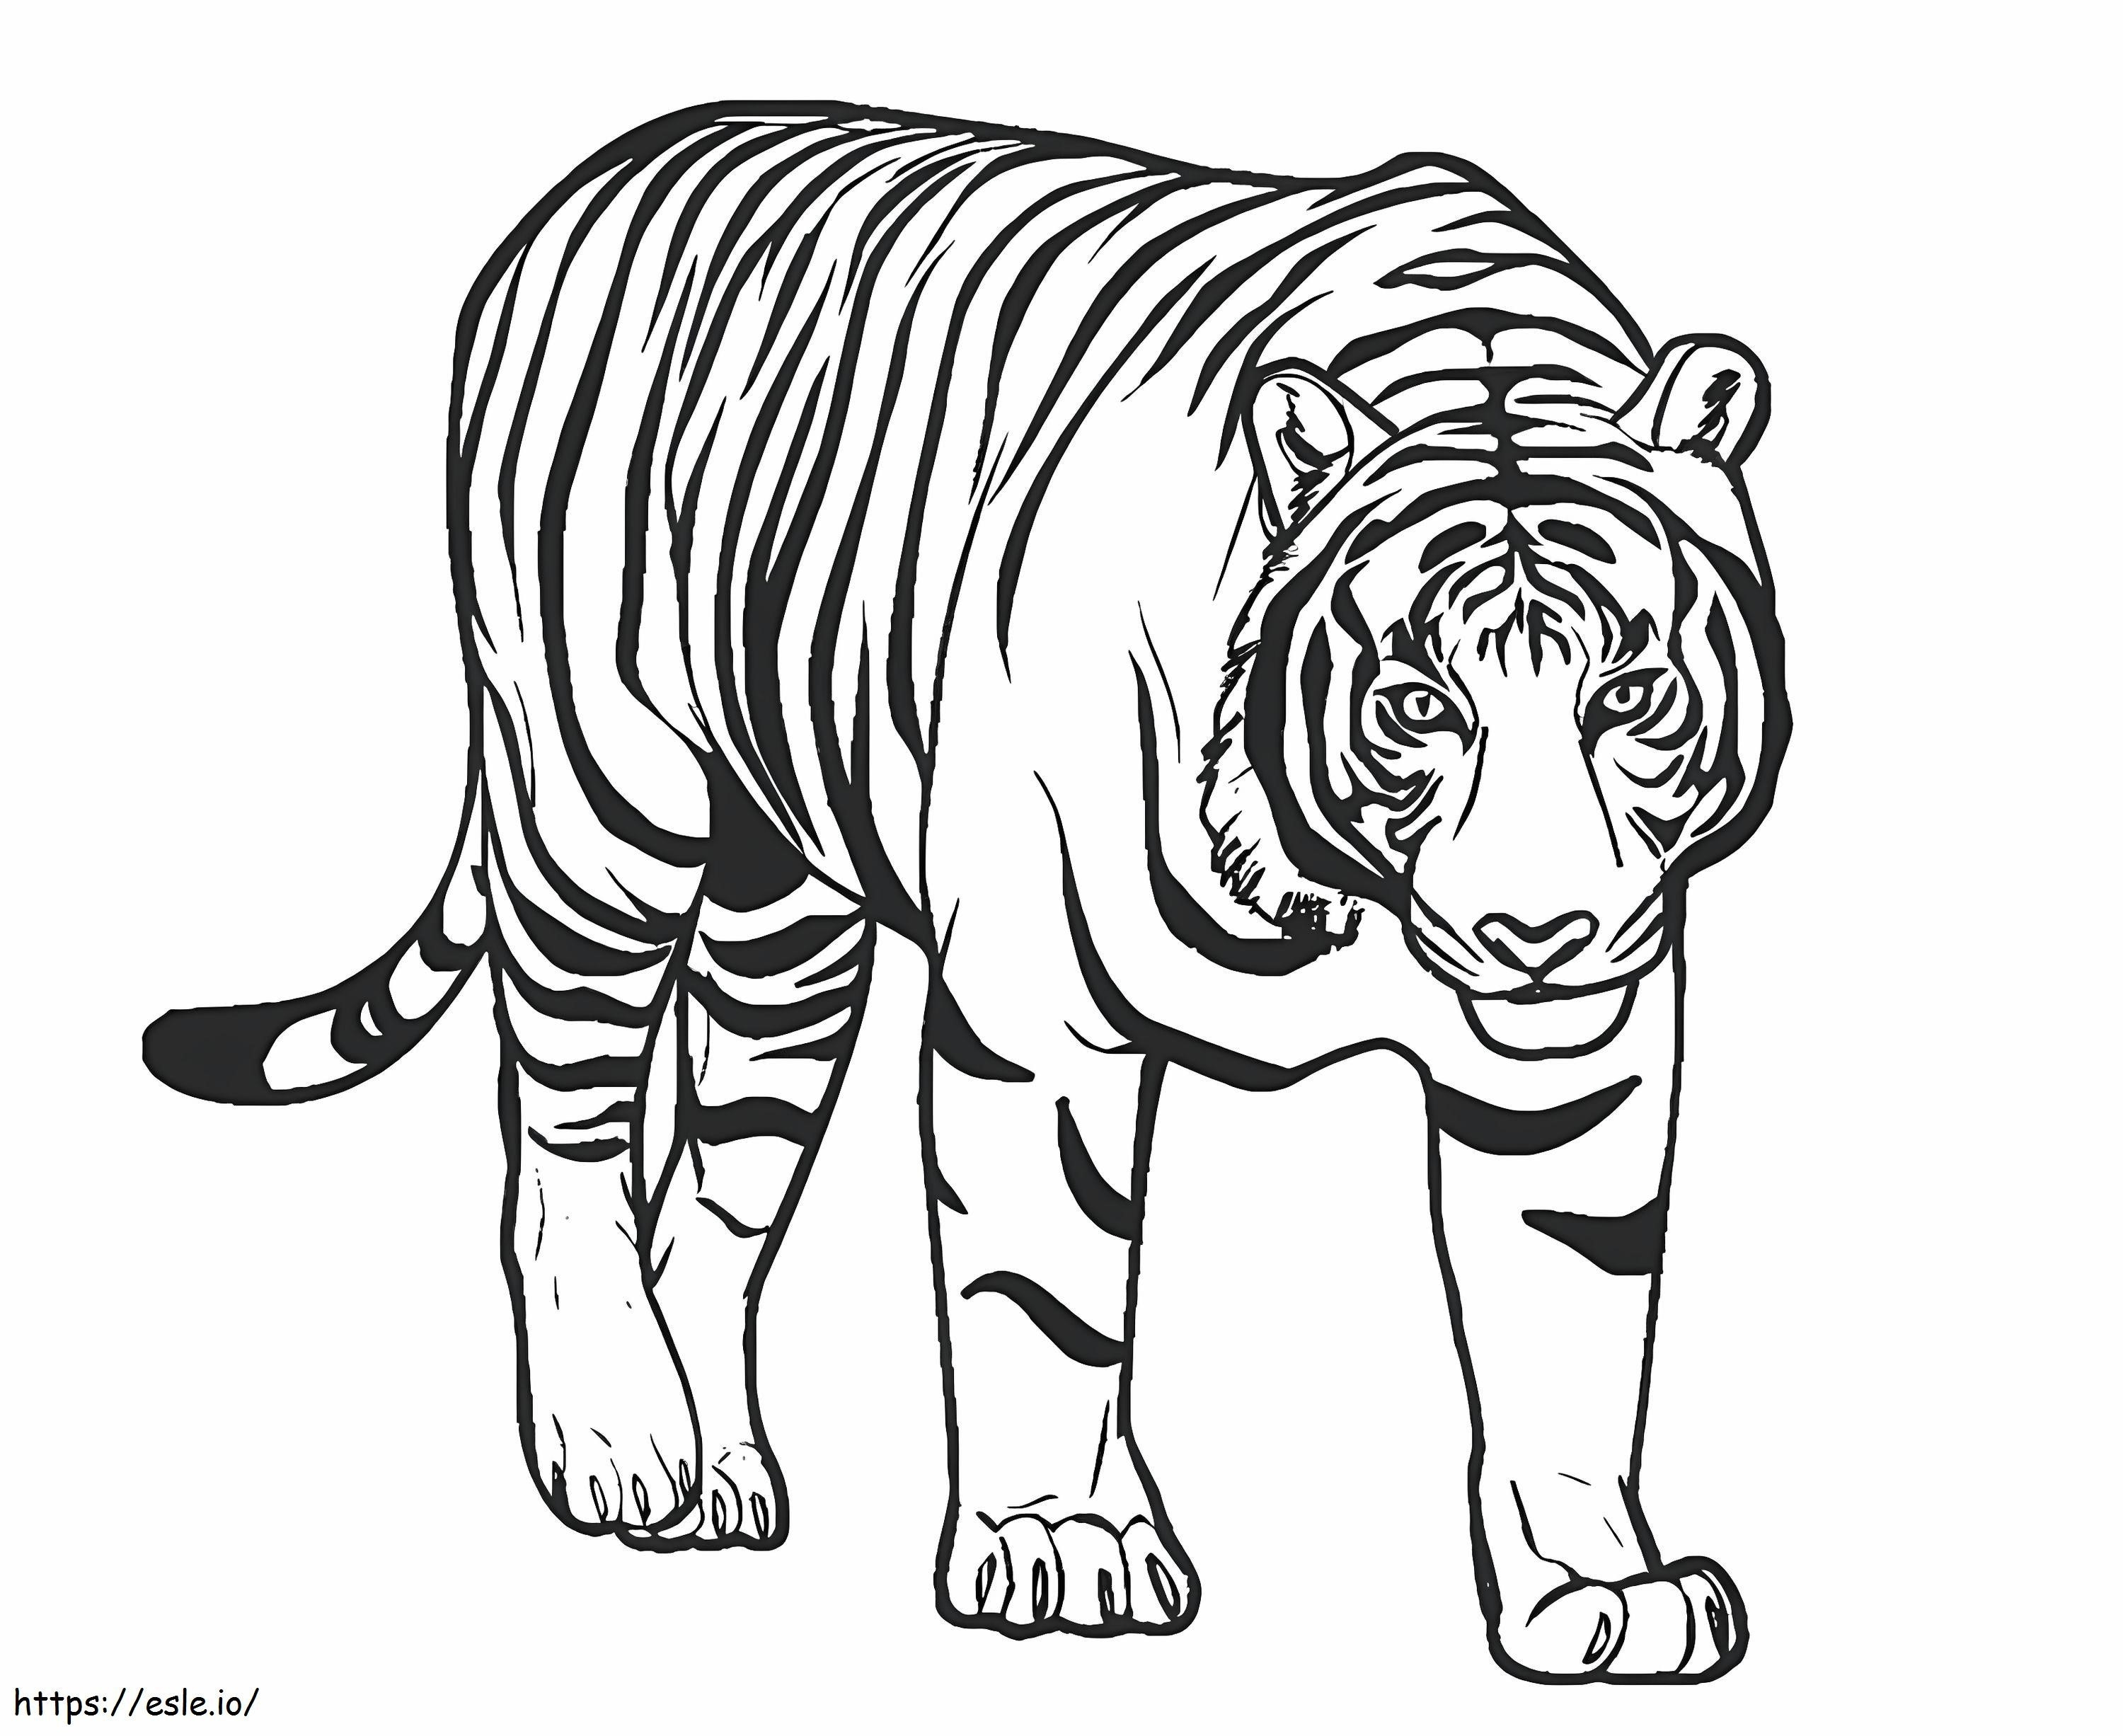 Upea tiikeri värityskuva